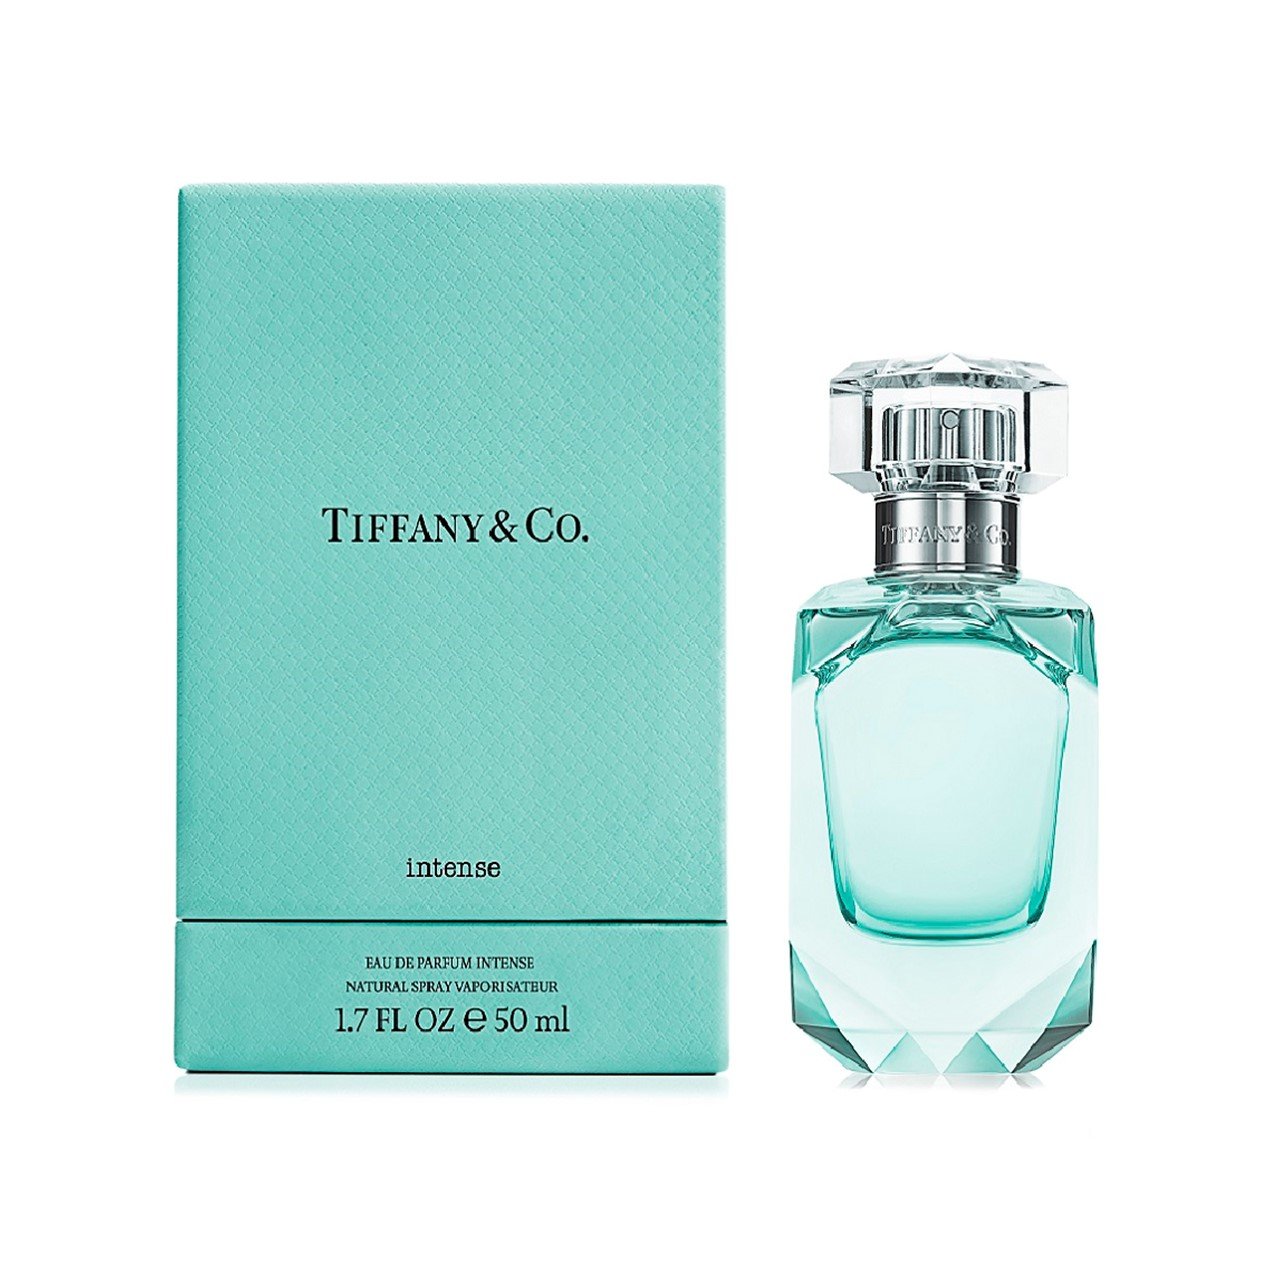 tiffany & co fragrance